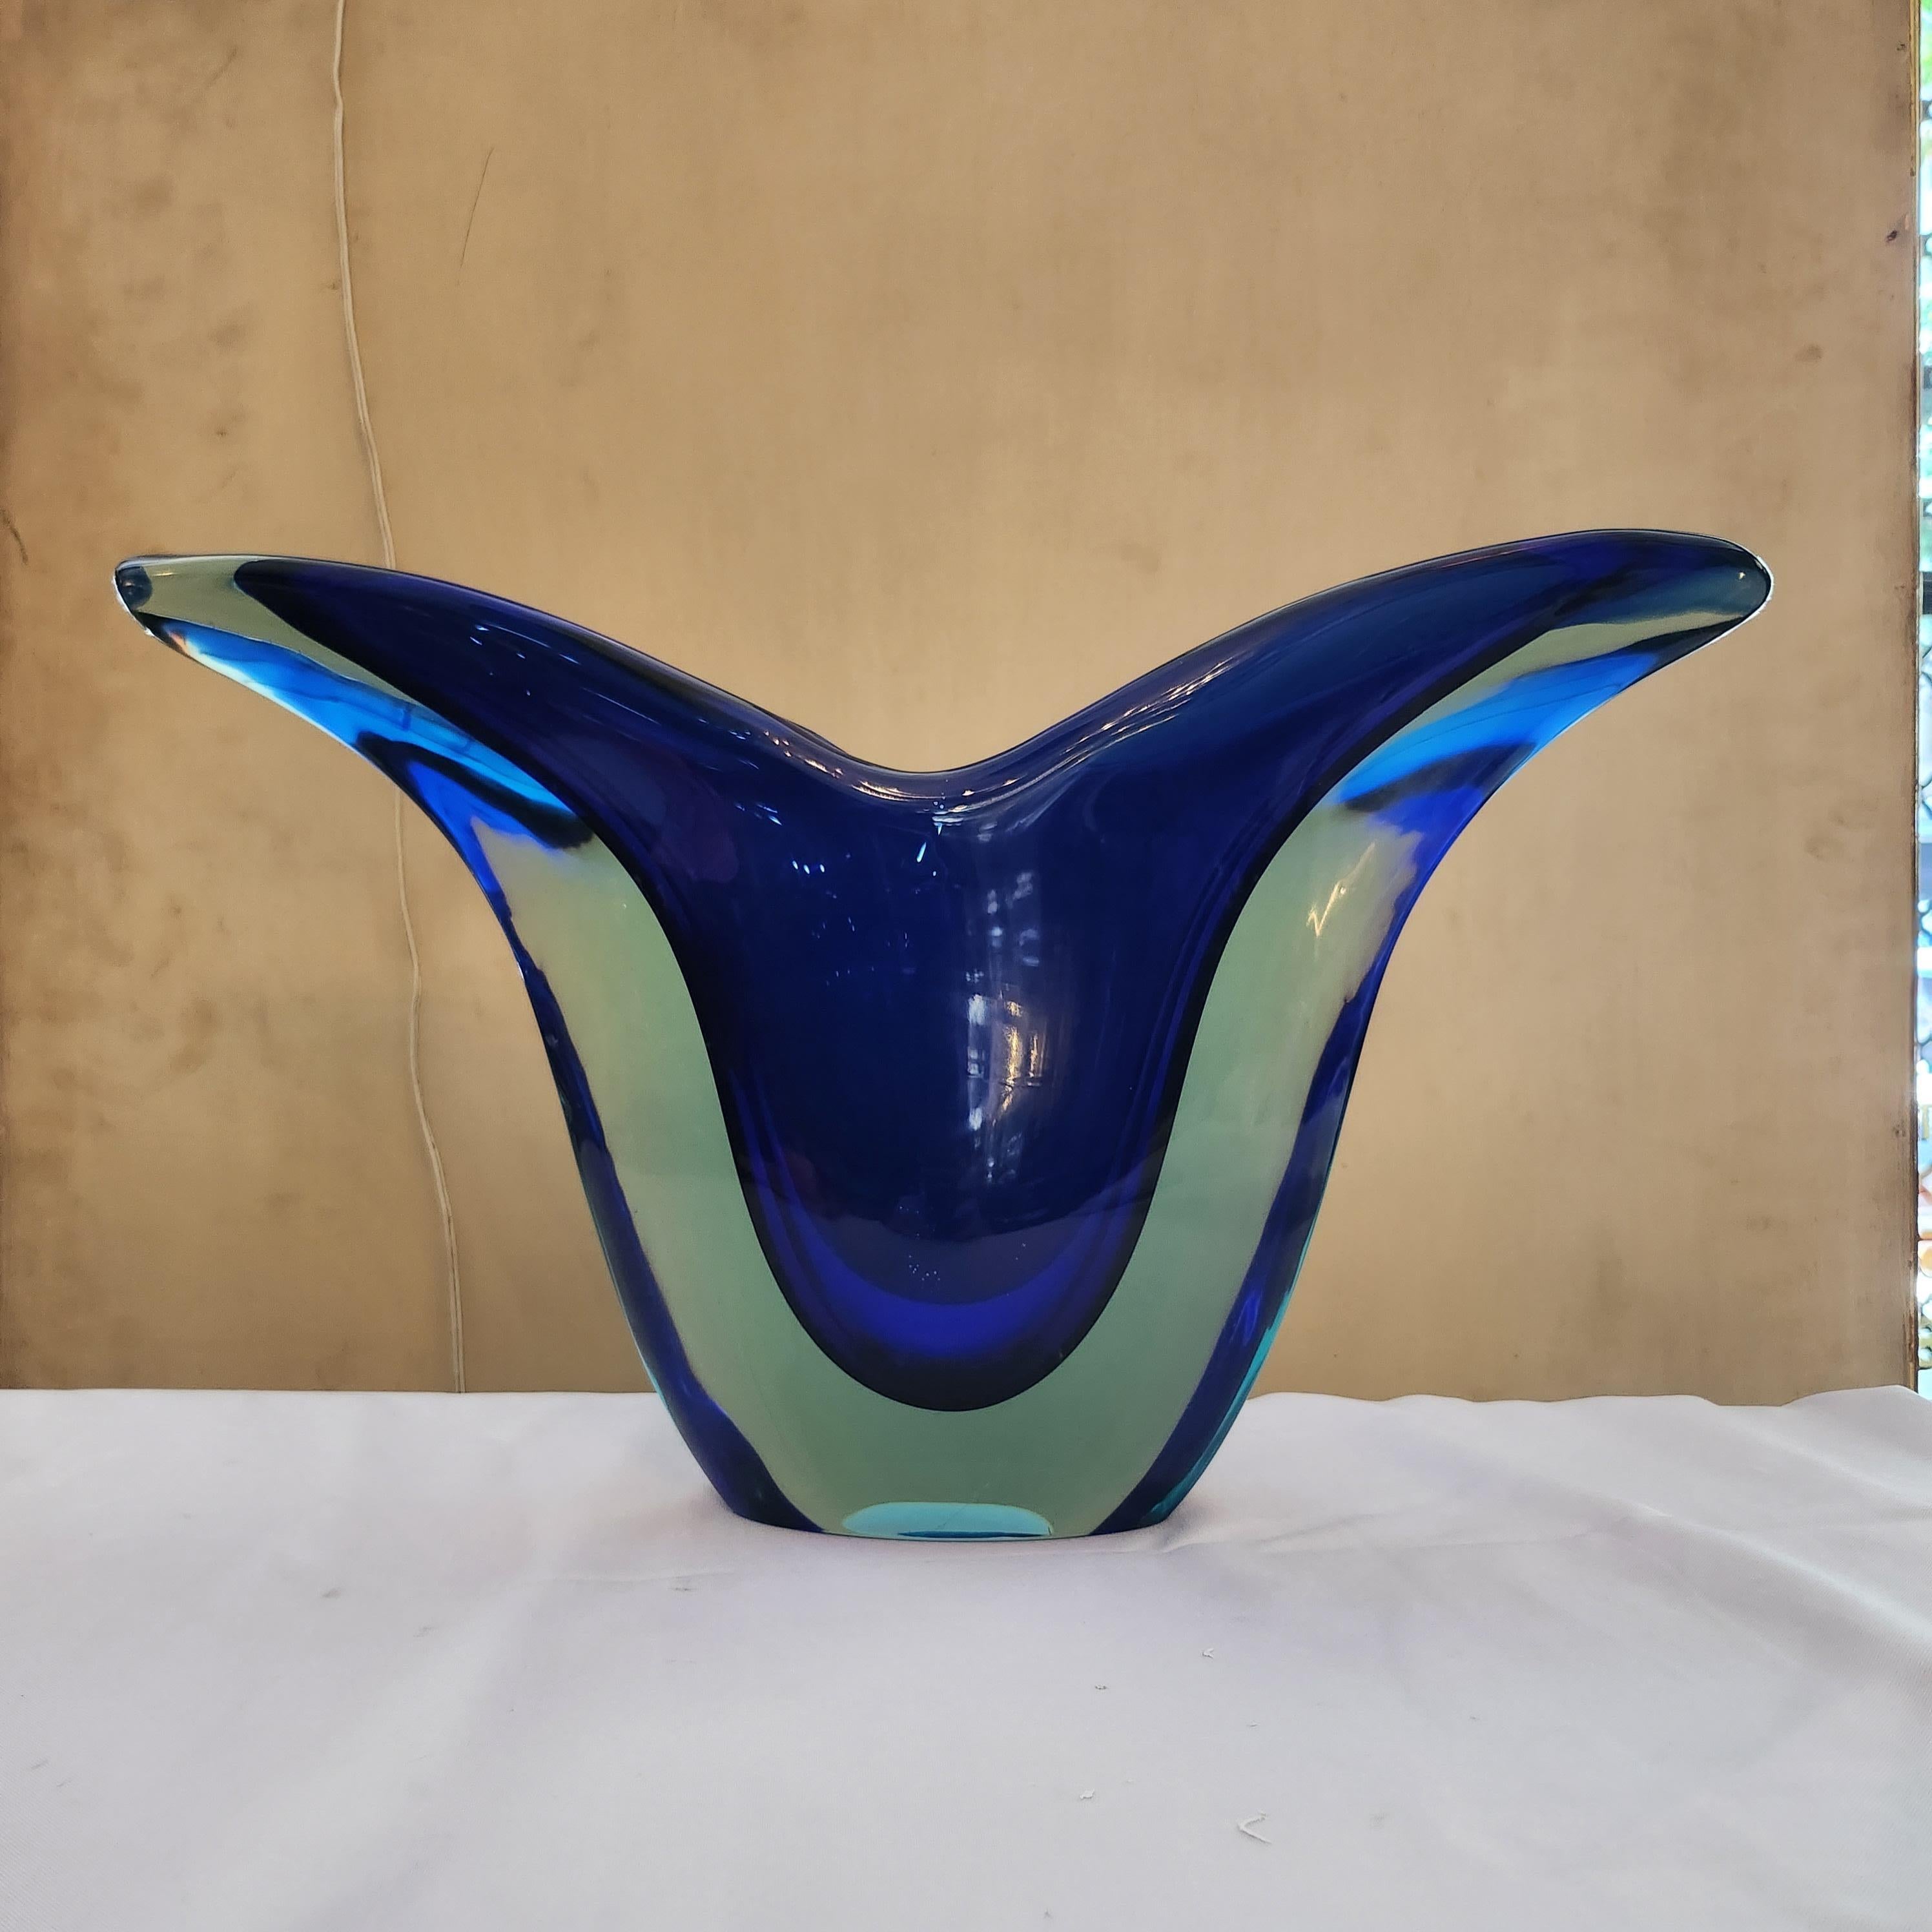 Ce vase en verre sommerso de Flavio Poli, datant de l'époque vibrante des années 1970, dégage une élégance et une sophistication intemporelles. Conçue dans une forme en V saisissante, elle mélange harmonieusement des nuances de bleu profond avec du